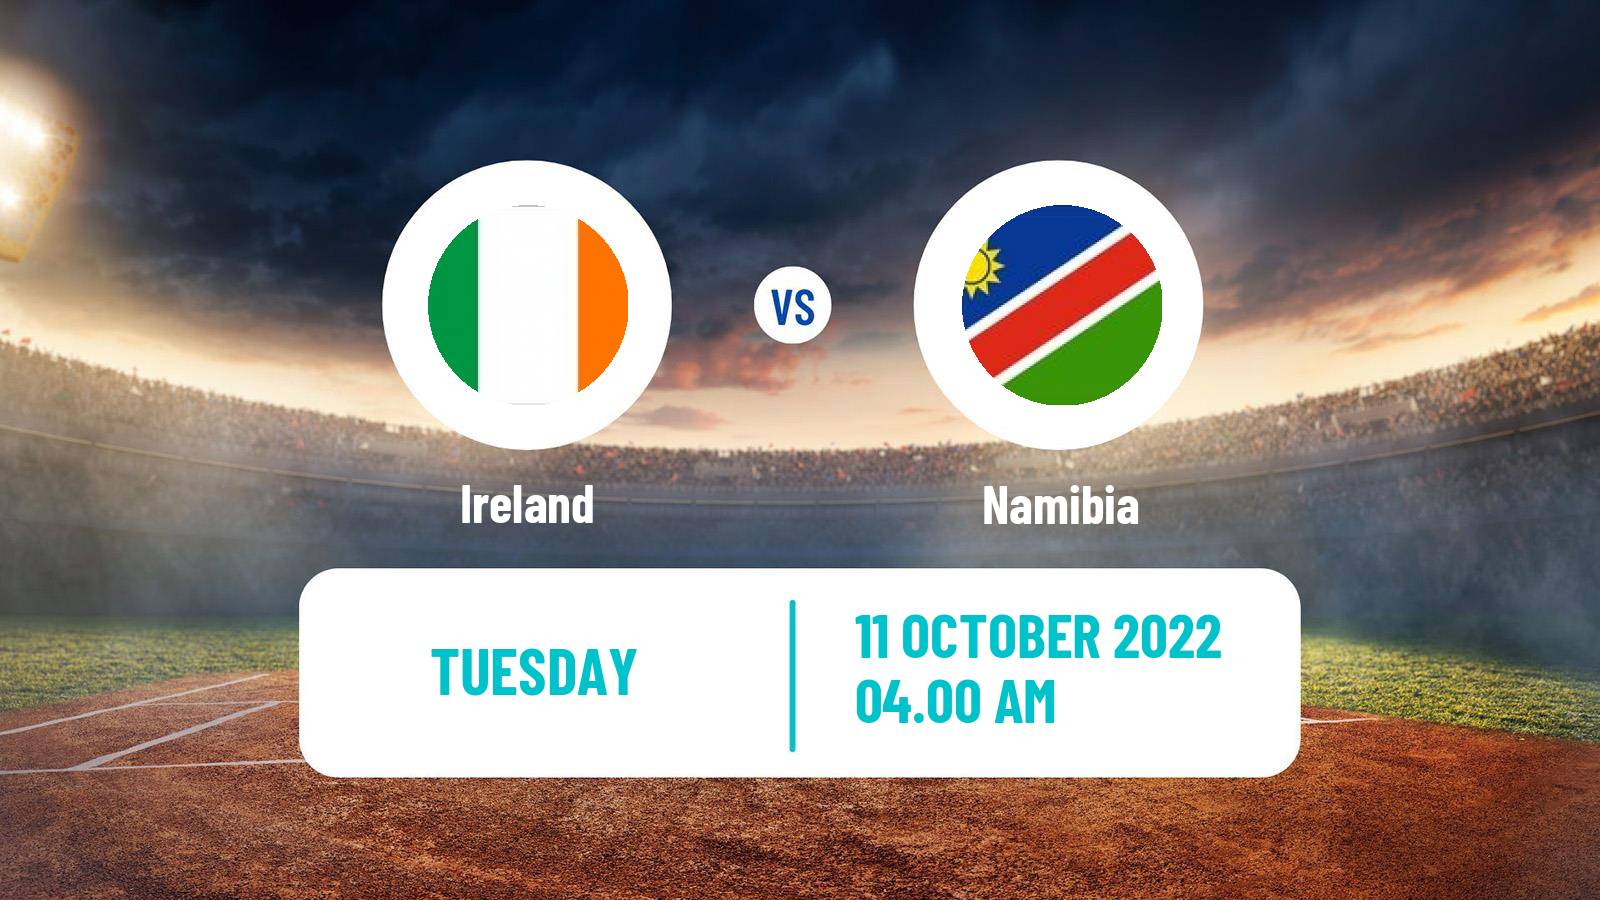 Cricket ICC World Twenty20 Ireland - Namibia